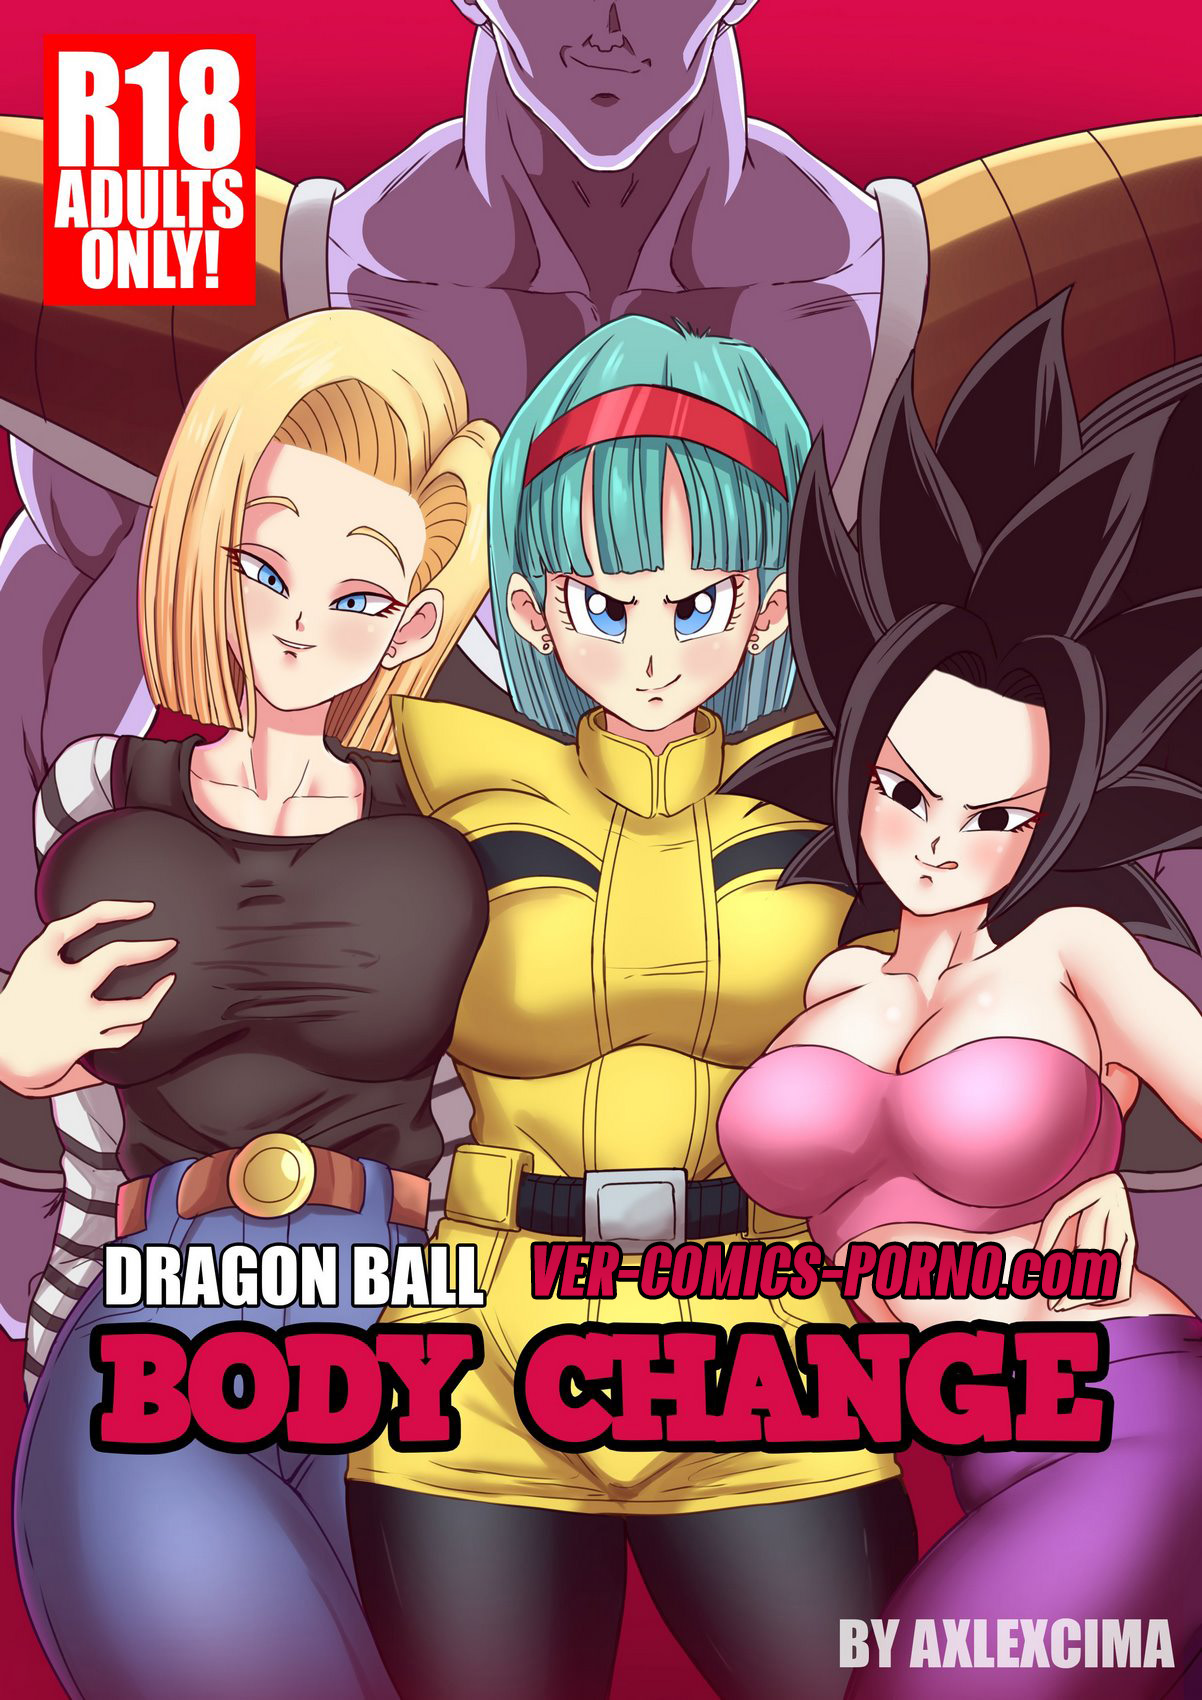 Body Change – AxlexCima Dragon ball porno